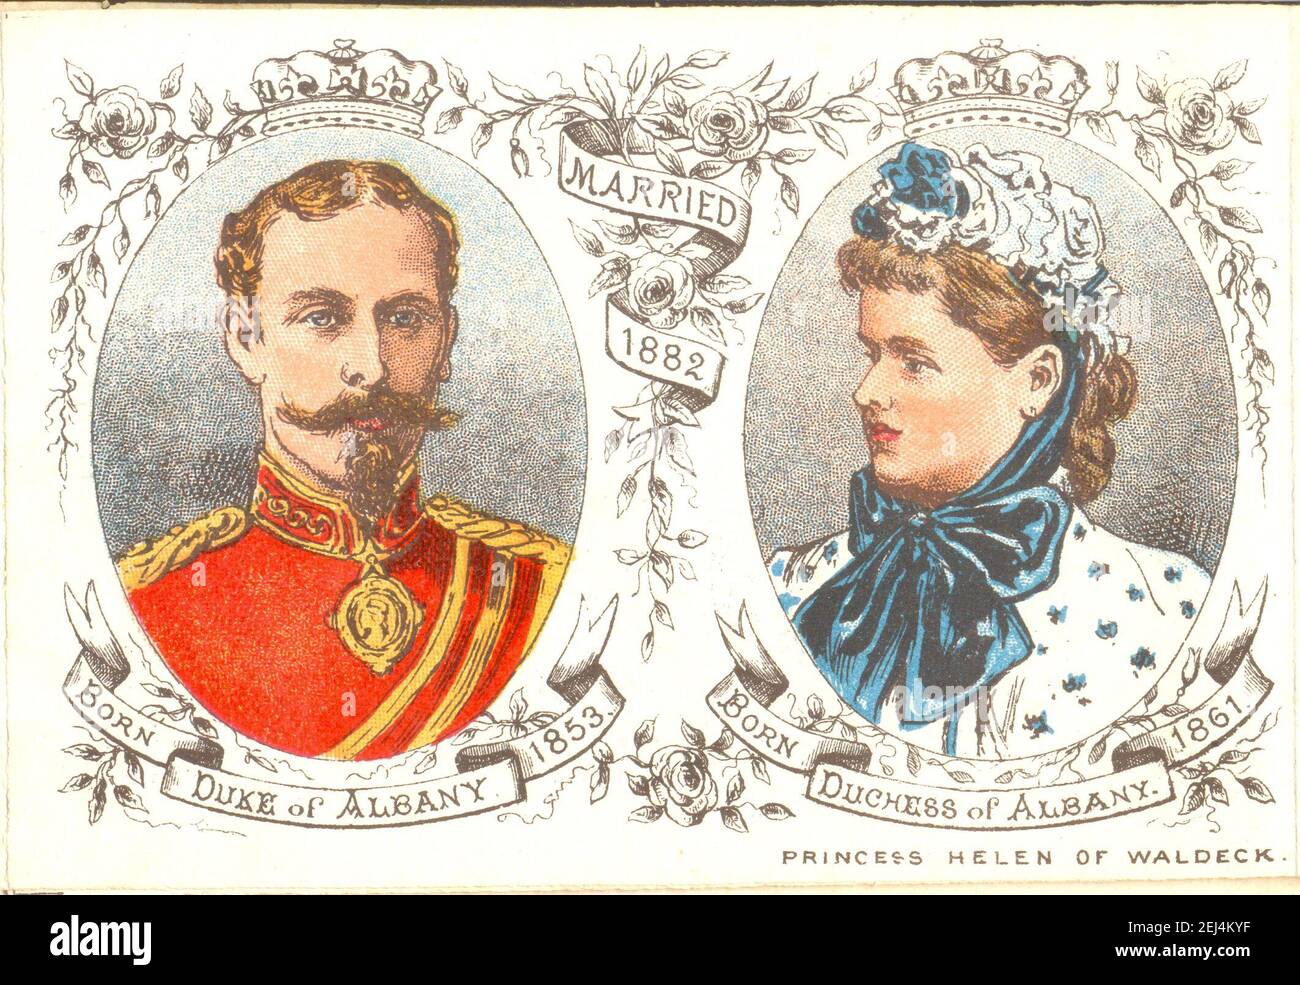 Retratos del duque y la duquesa de Albany de la Folleto de recuerdo celebrando la Reina y la Familia Real a Recuerdo del glorioso Reino de su Majestad 1887 Foto de stock